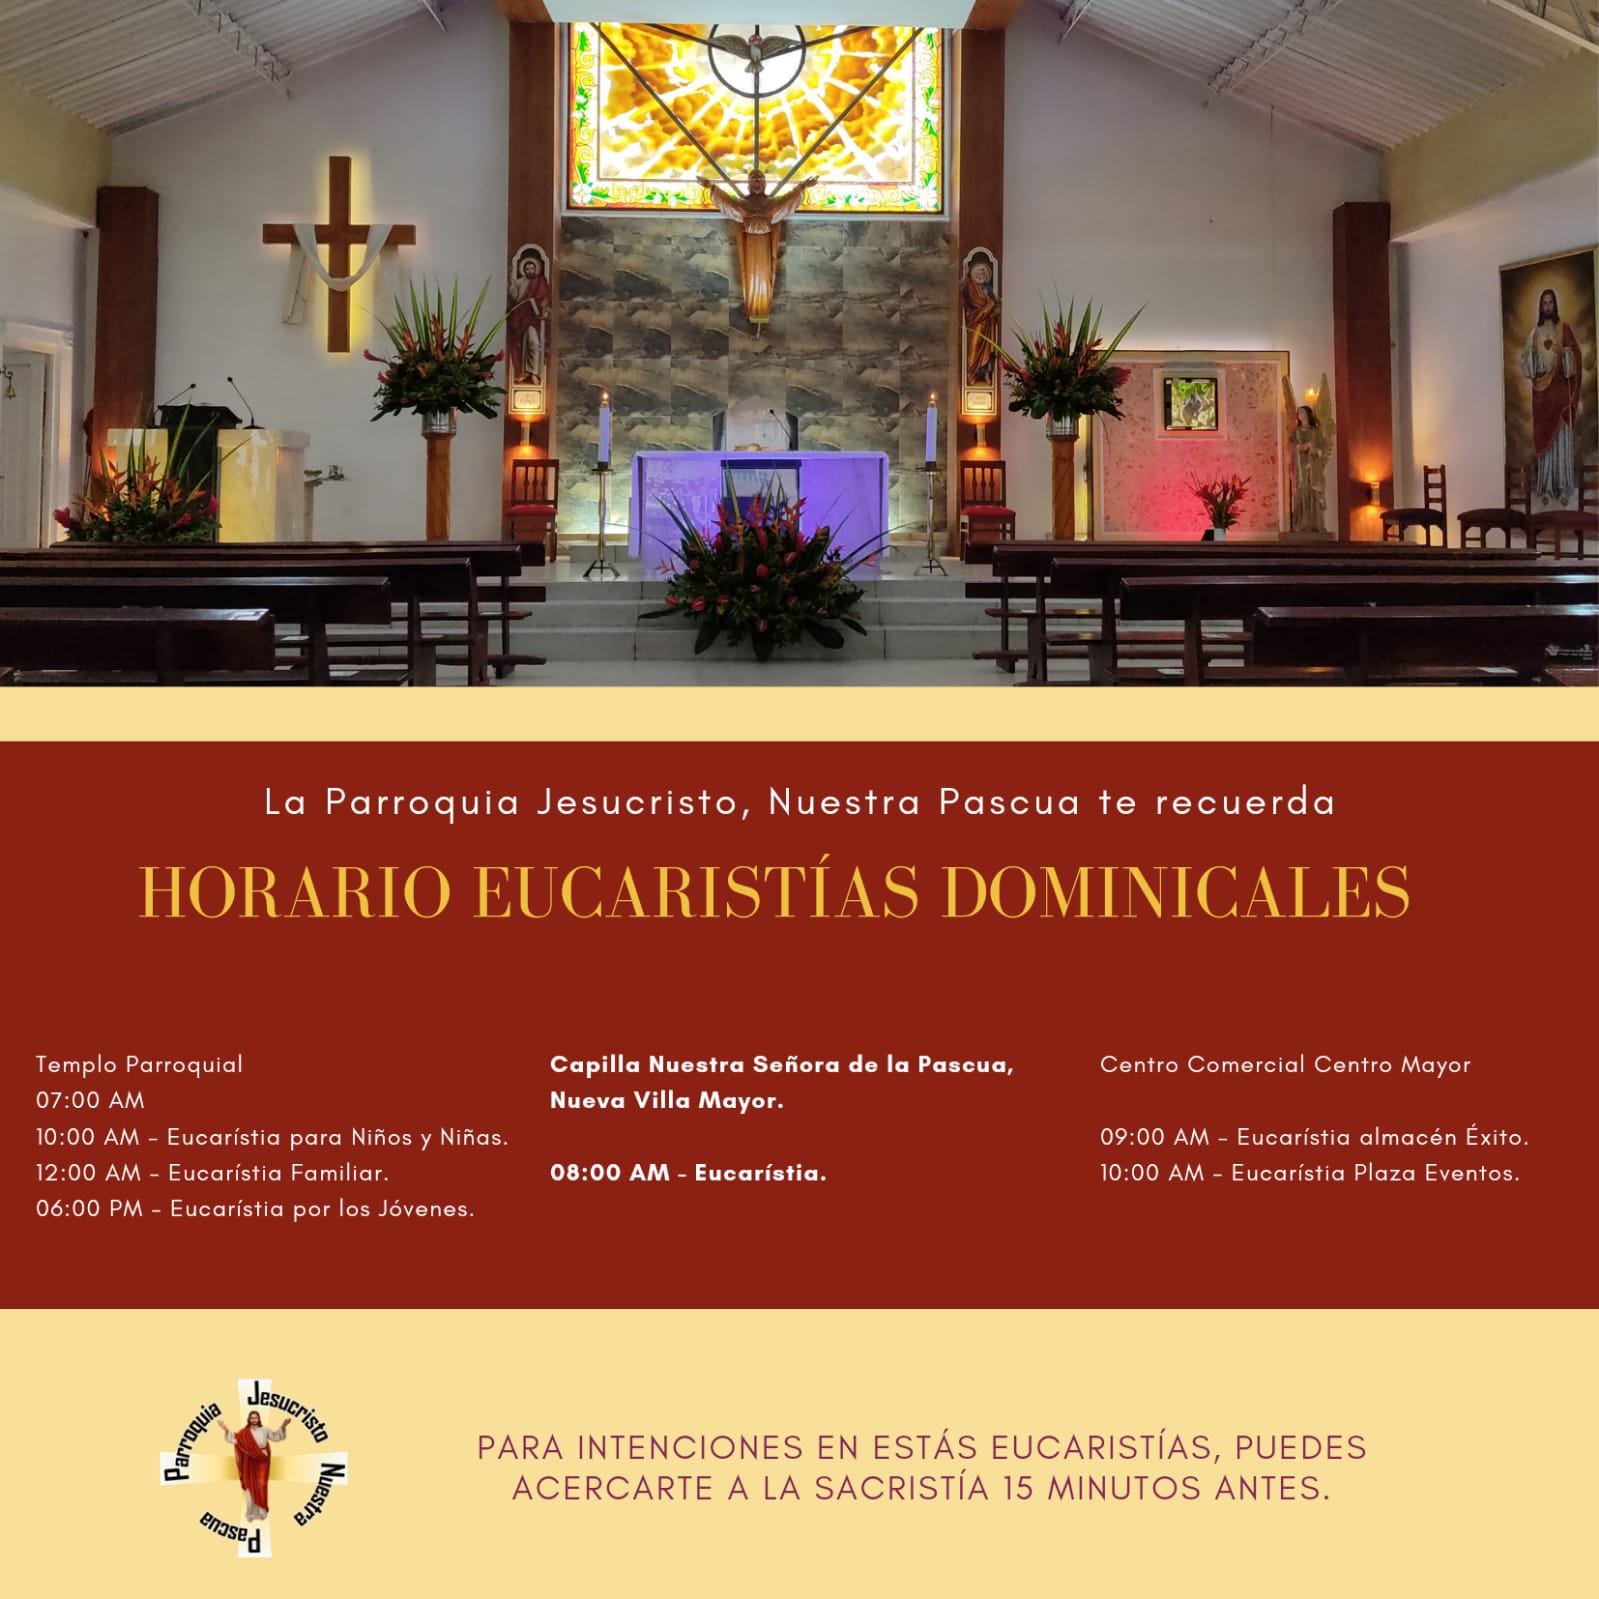 Horarios Eucaristías Dominicales